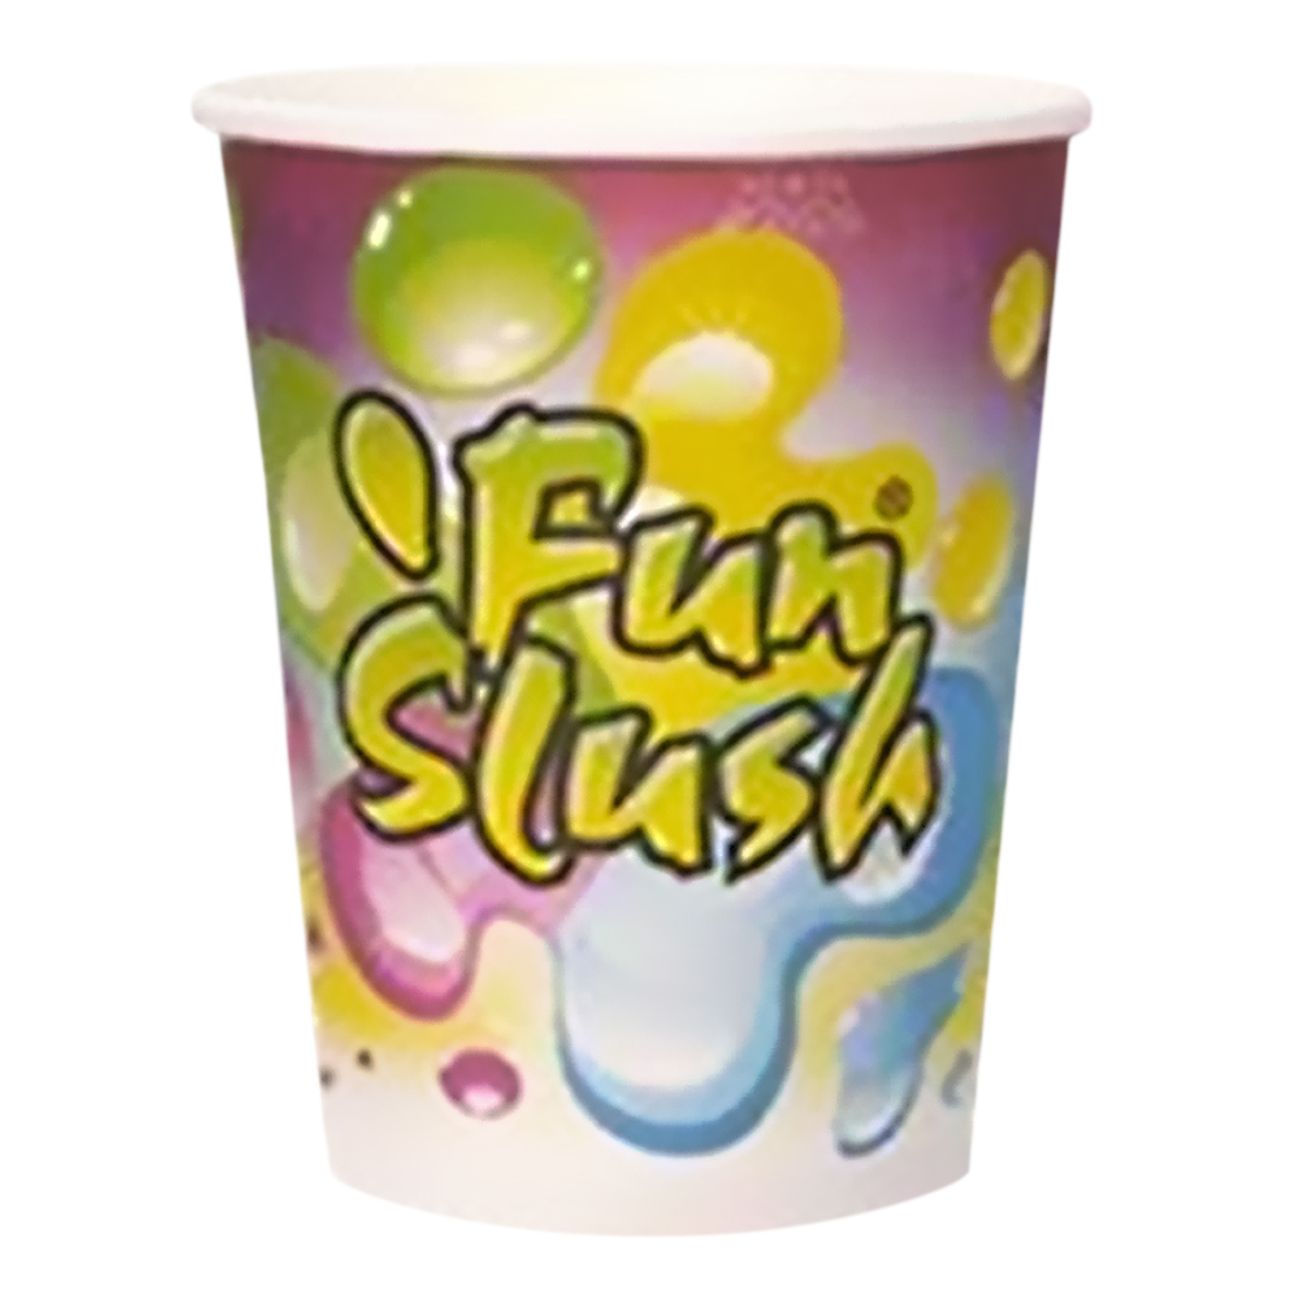 fun-slush-mugg-75595-3